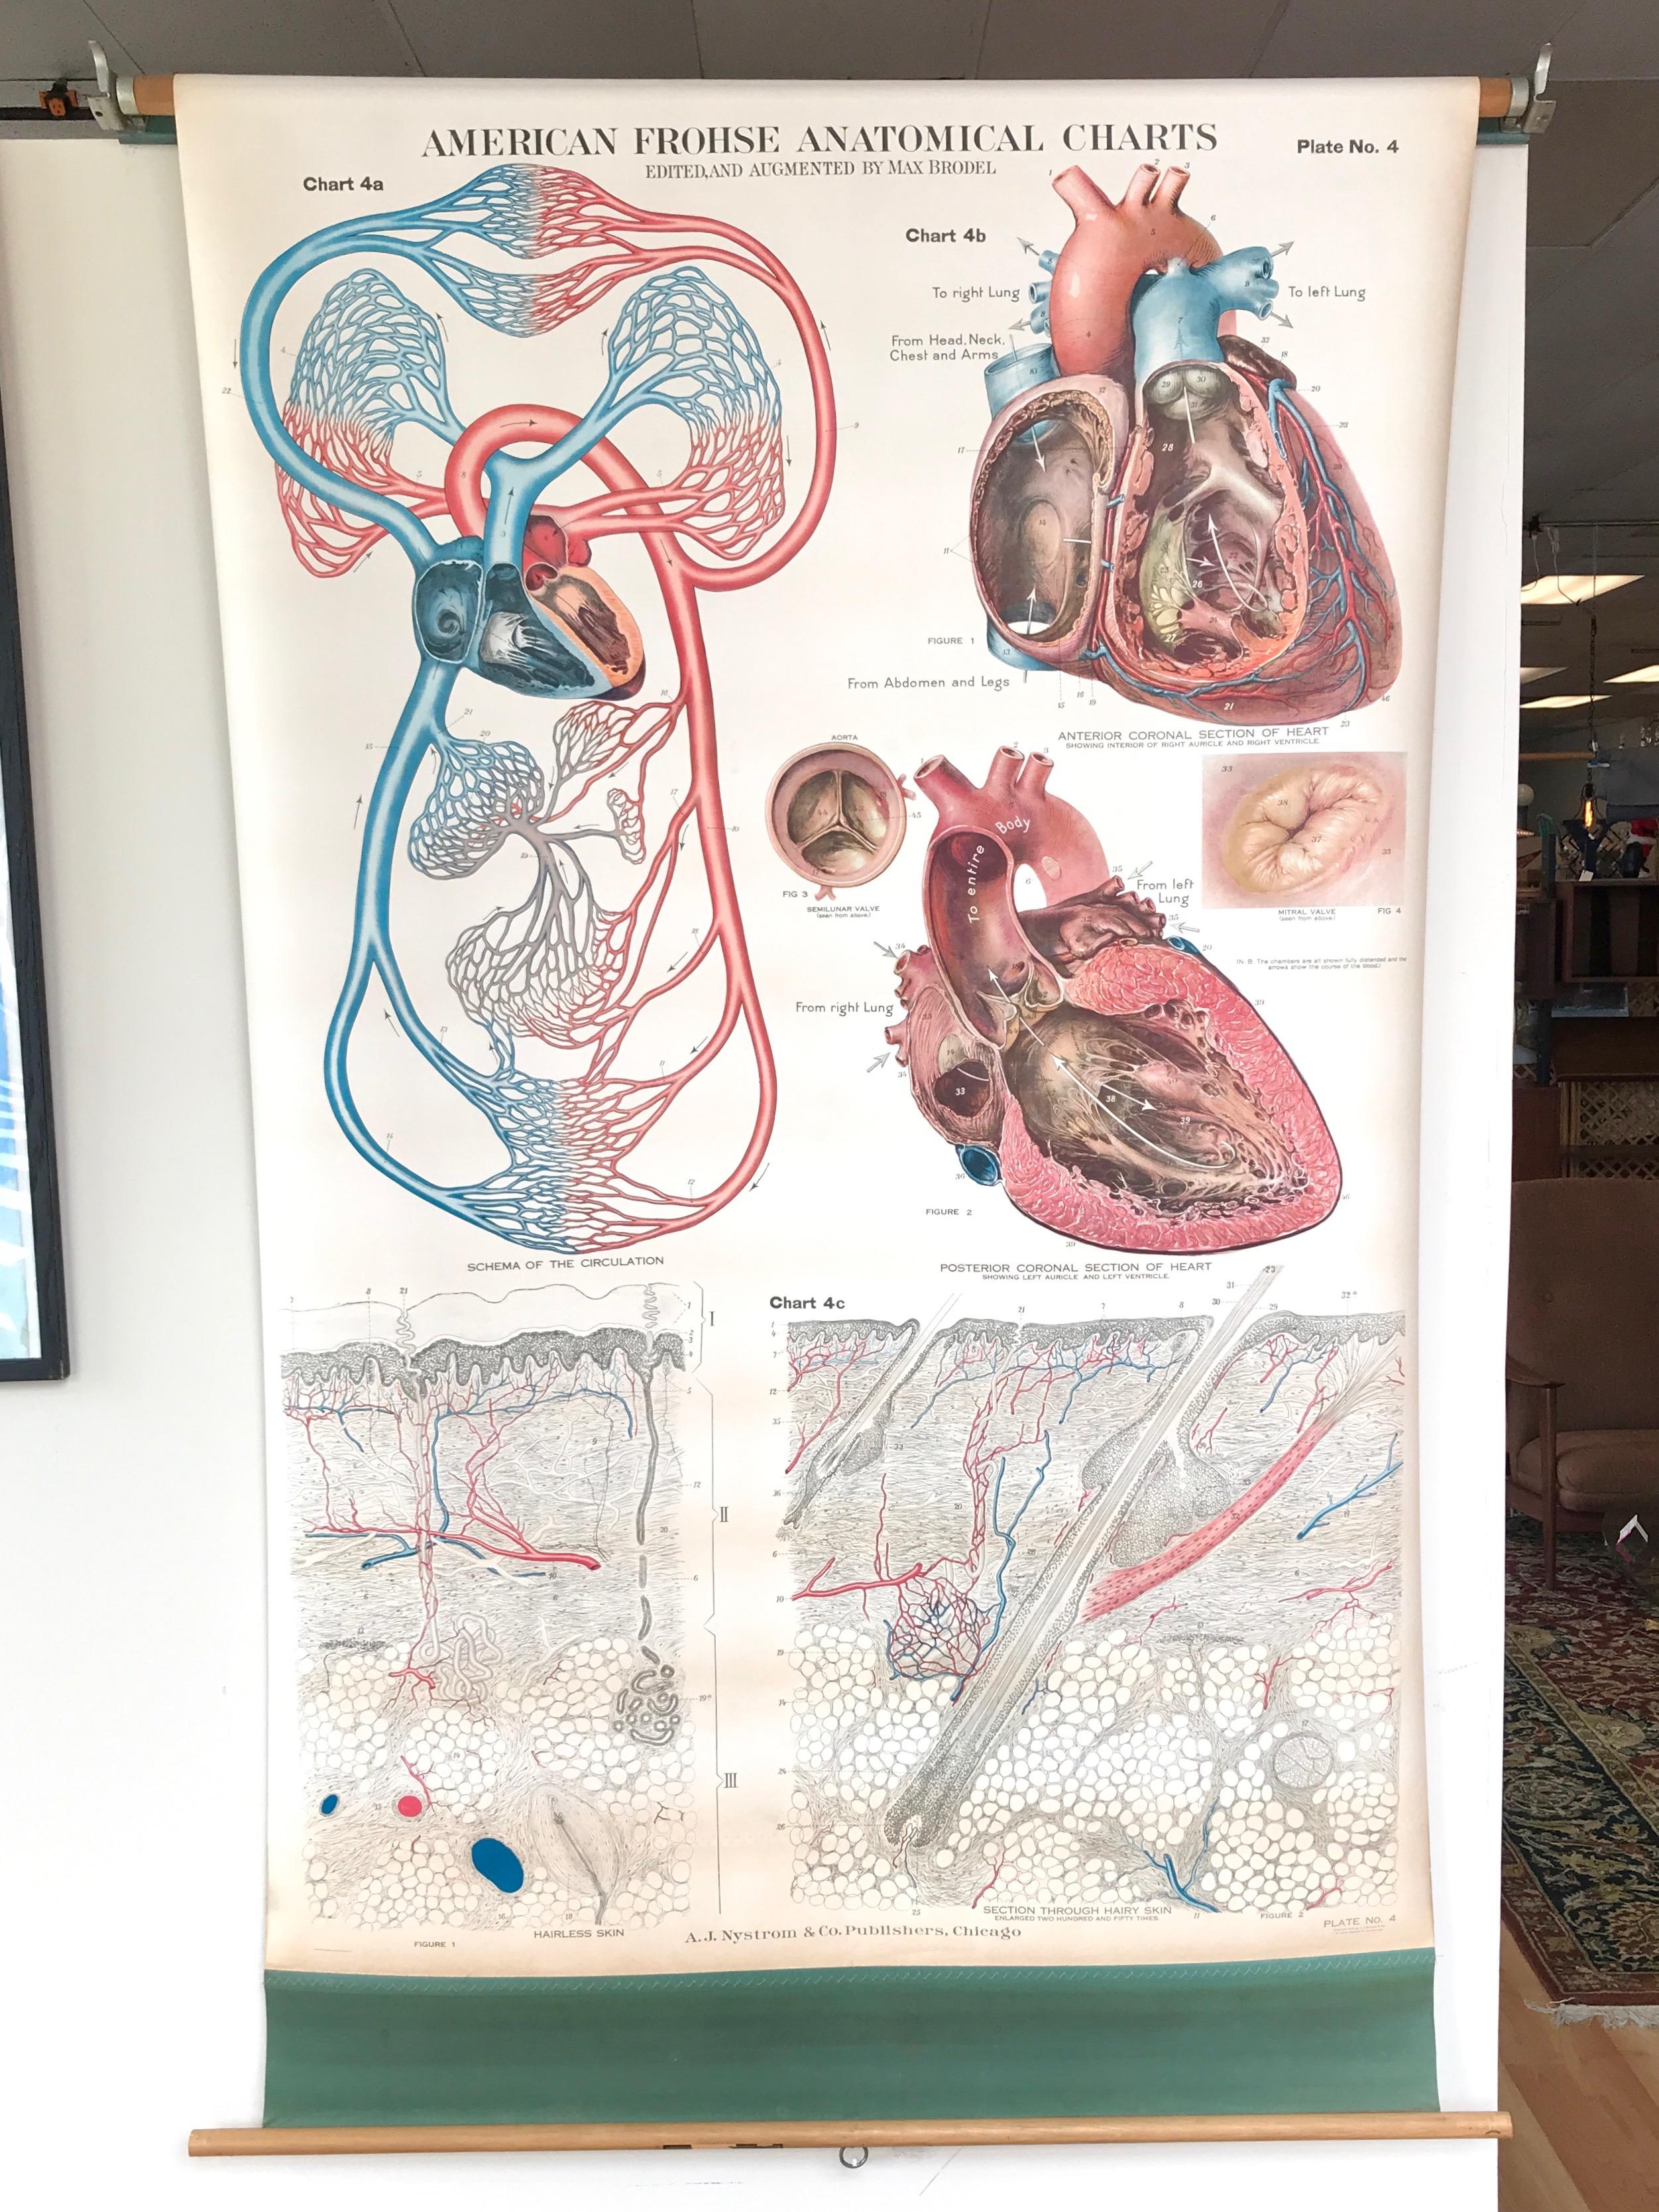 Une carte anatomique américaine de Frohse de taille impressionnante et méticuleusement exécutée, représentant le système circulatoire humain, publiée par A.J. Nystrom & Co, Chicago.

Planche n° 4 d'une série influente de grandes lithographies en